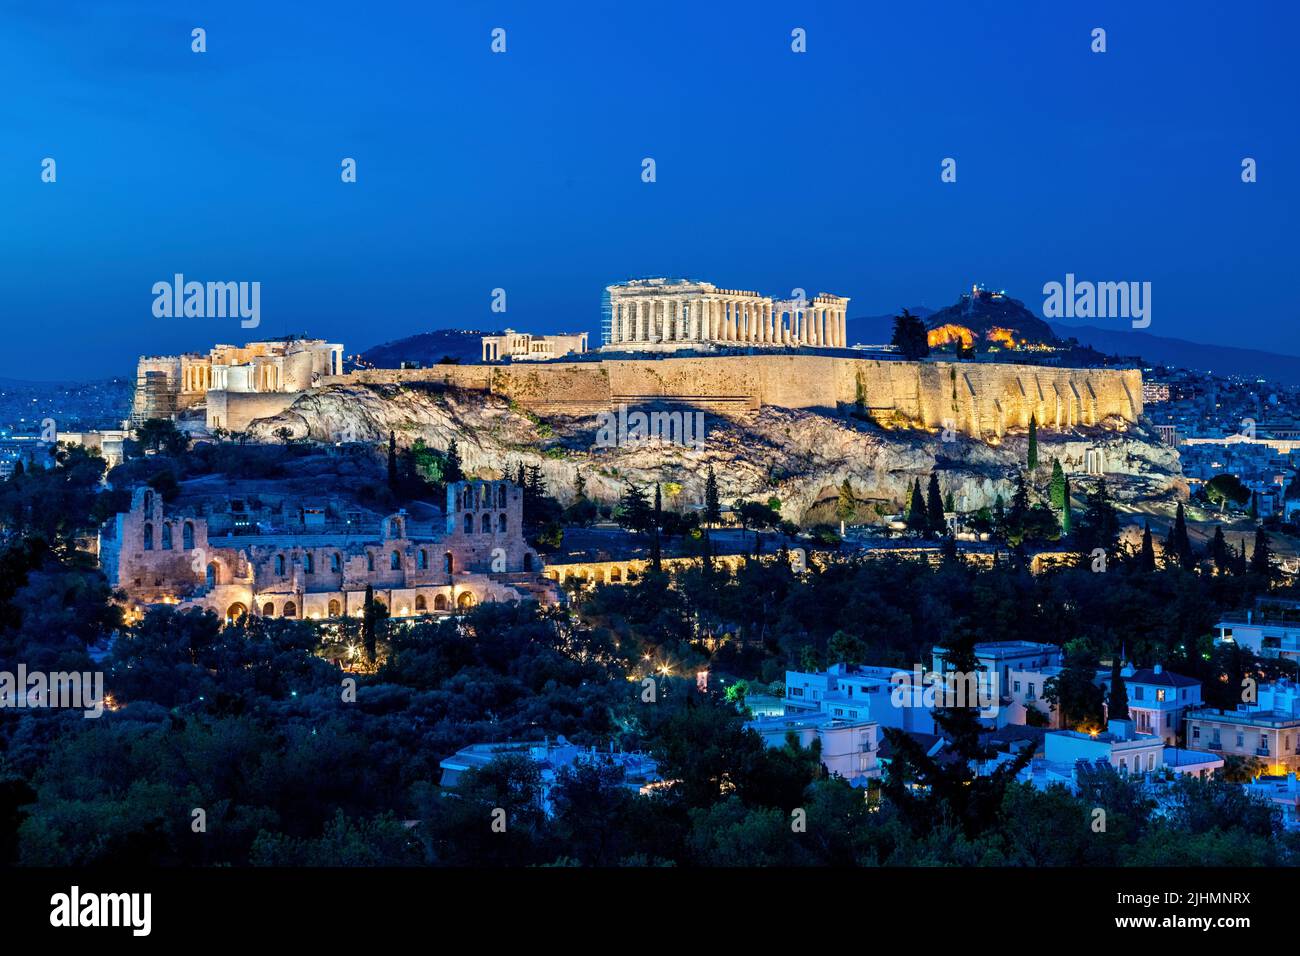 L'Acropole d'Athènes à l'heure bleue. Vous pouvez voir le Parthénon, l'Erecthéion et le Propylaea. Vous pouvez également voir l'Herodeum. Banque D'Images